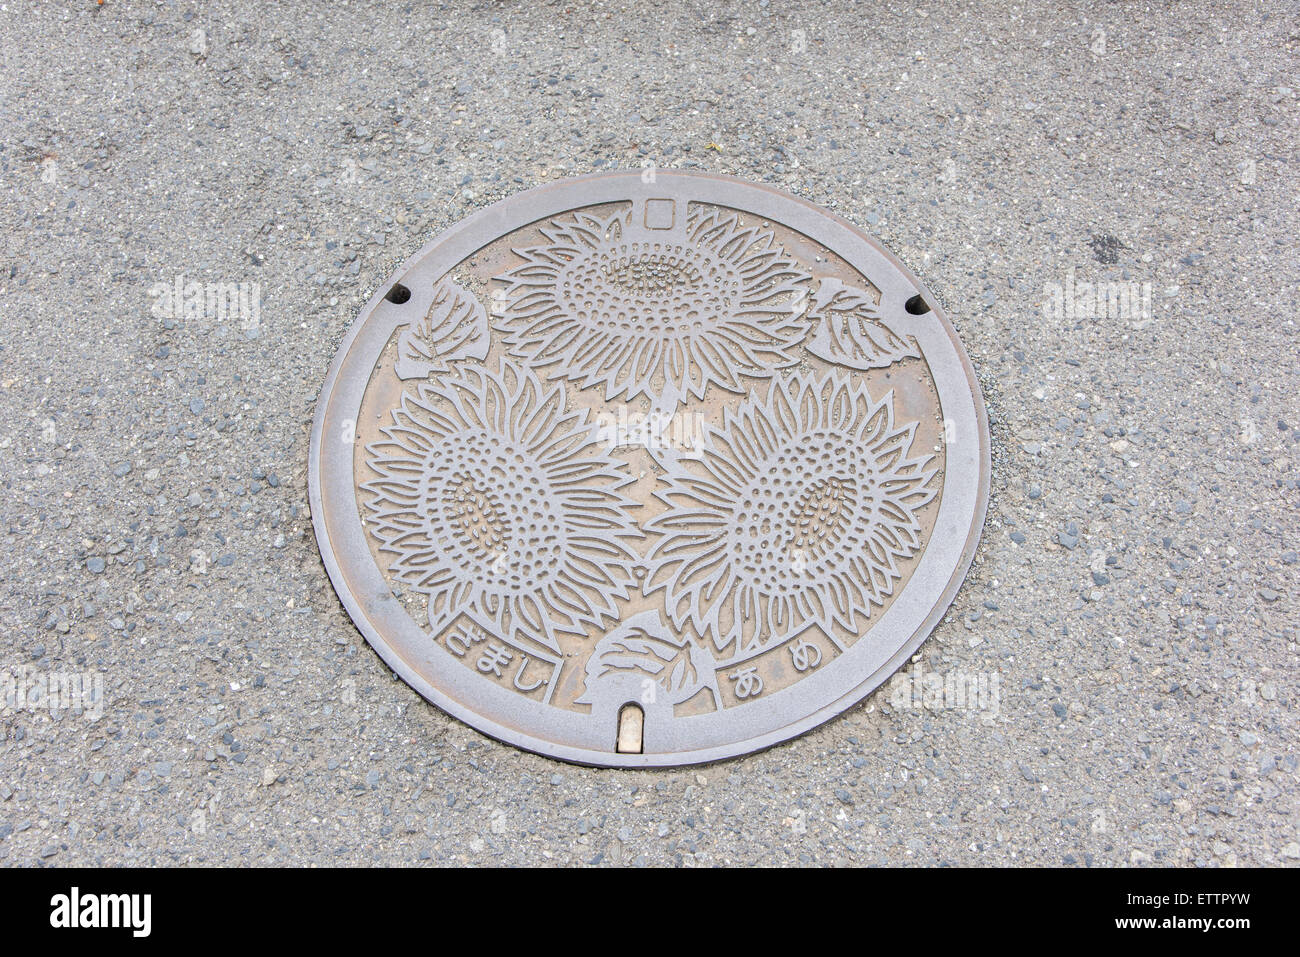 Manhole, Zama city,Kanagawa Prefecture,Japan Stock Photo